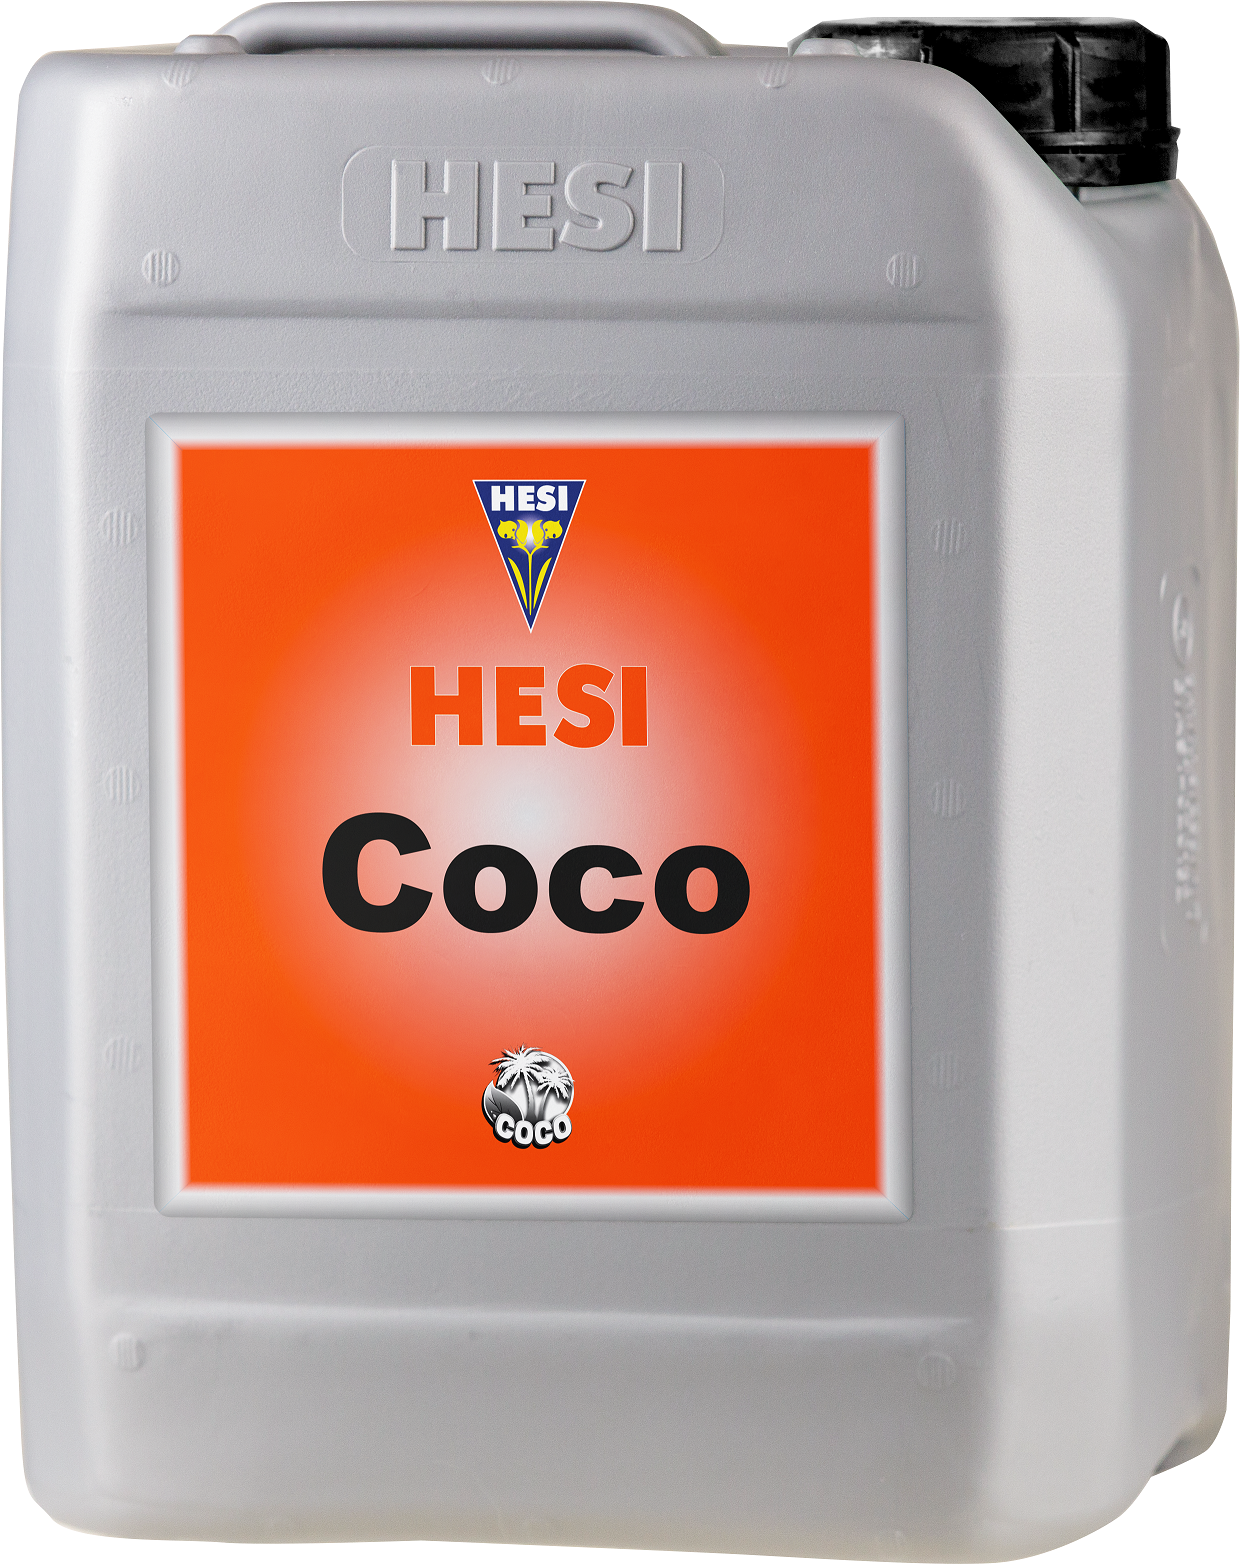 Hesi Coco - 5 liter